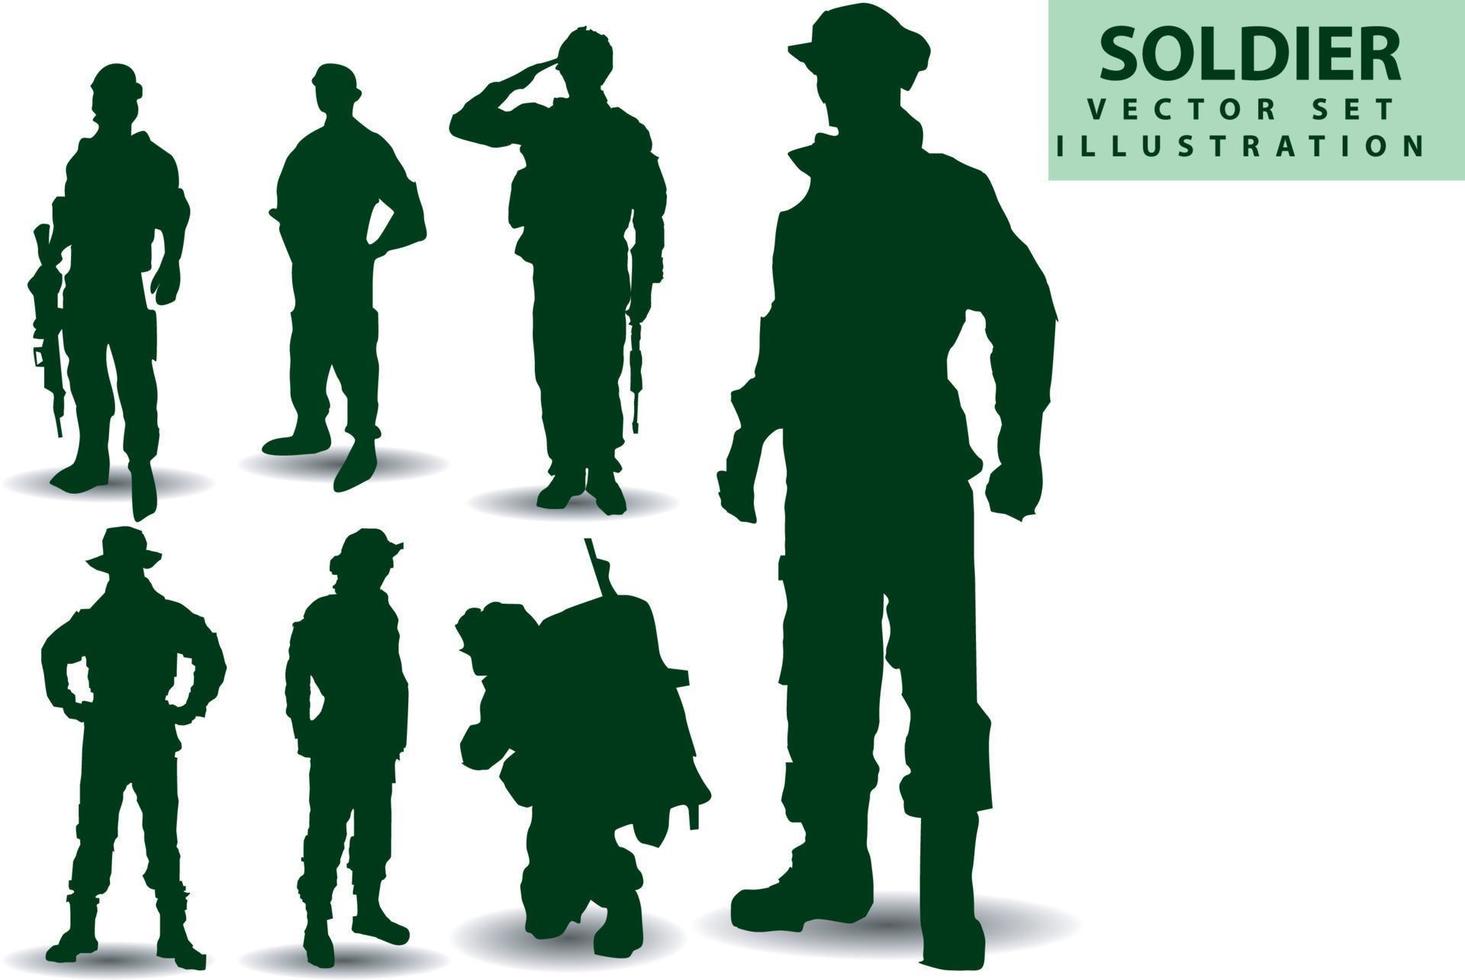 silhouettes vectorielles de soldats, police, cow-boy, groupe 1 équipe différents styles tenant des armes, se préparant à la bataille, combat, style, vêtements verts isolés sur fond blanc vecteur